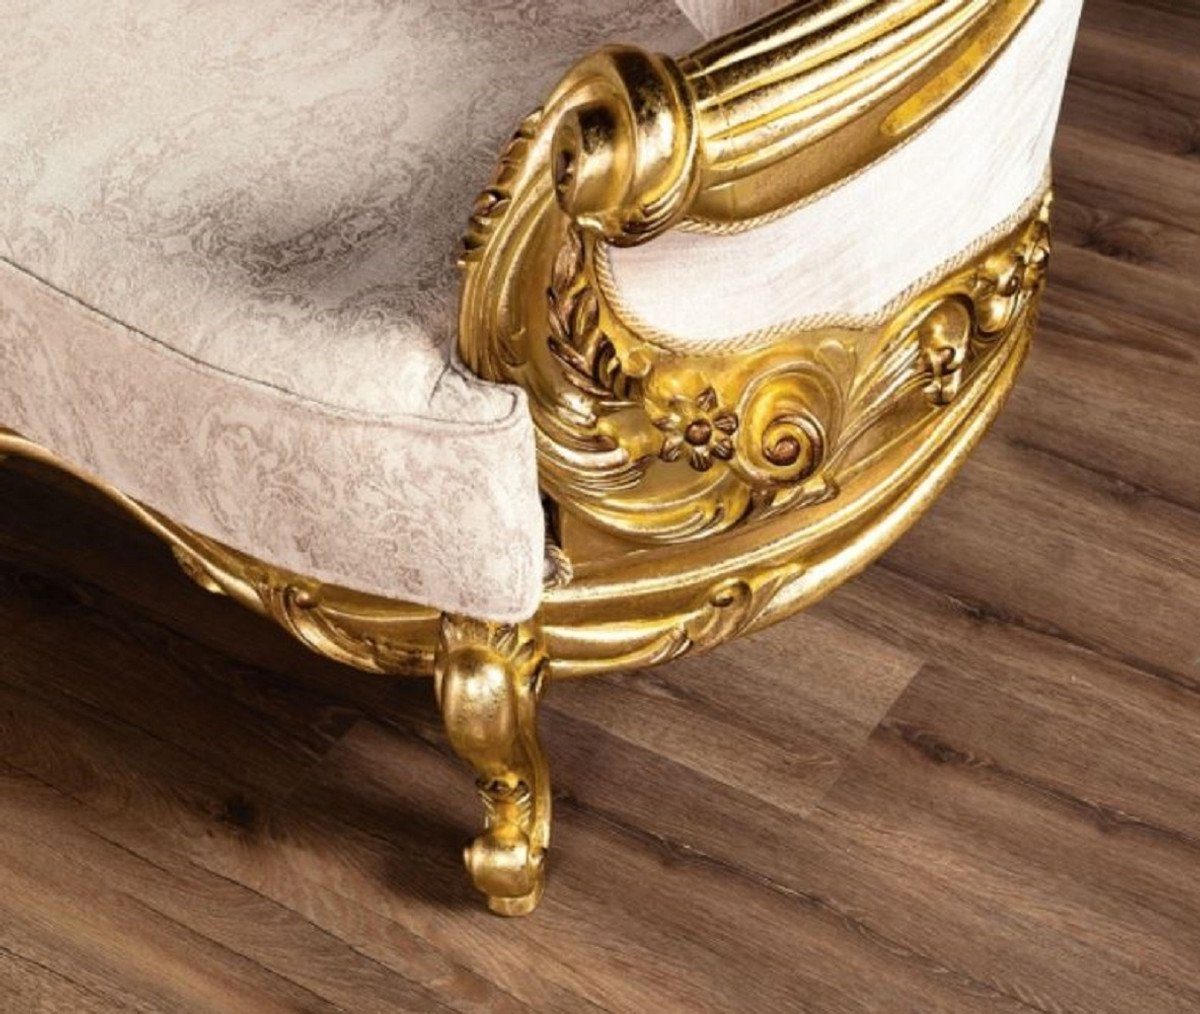 Gold - Padrino - Möbel Wohnzimmer Luxus Sofa Sofa Casa Sofa / Muster Wohnzimmer Prunkvoll Barock & Prunkvolles Edel mit Barock Cremefarben -